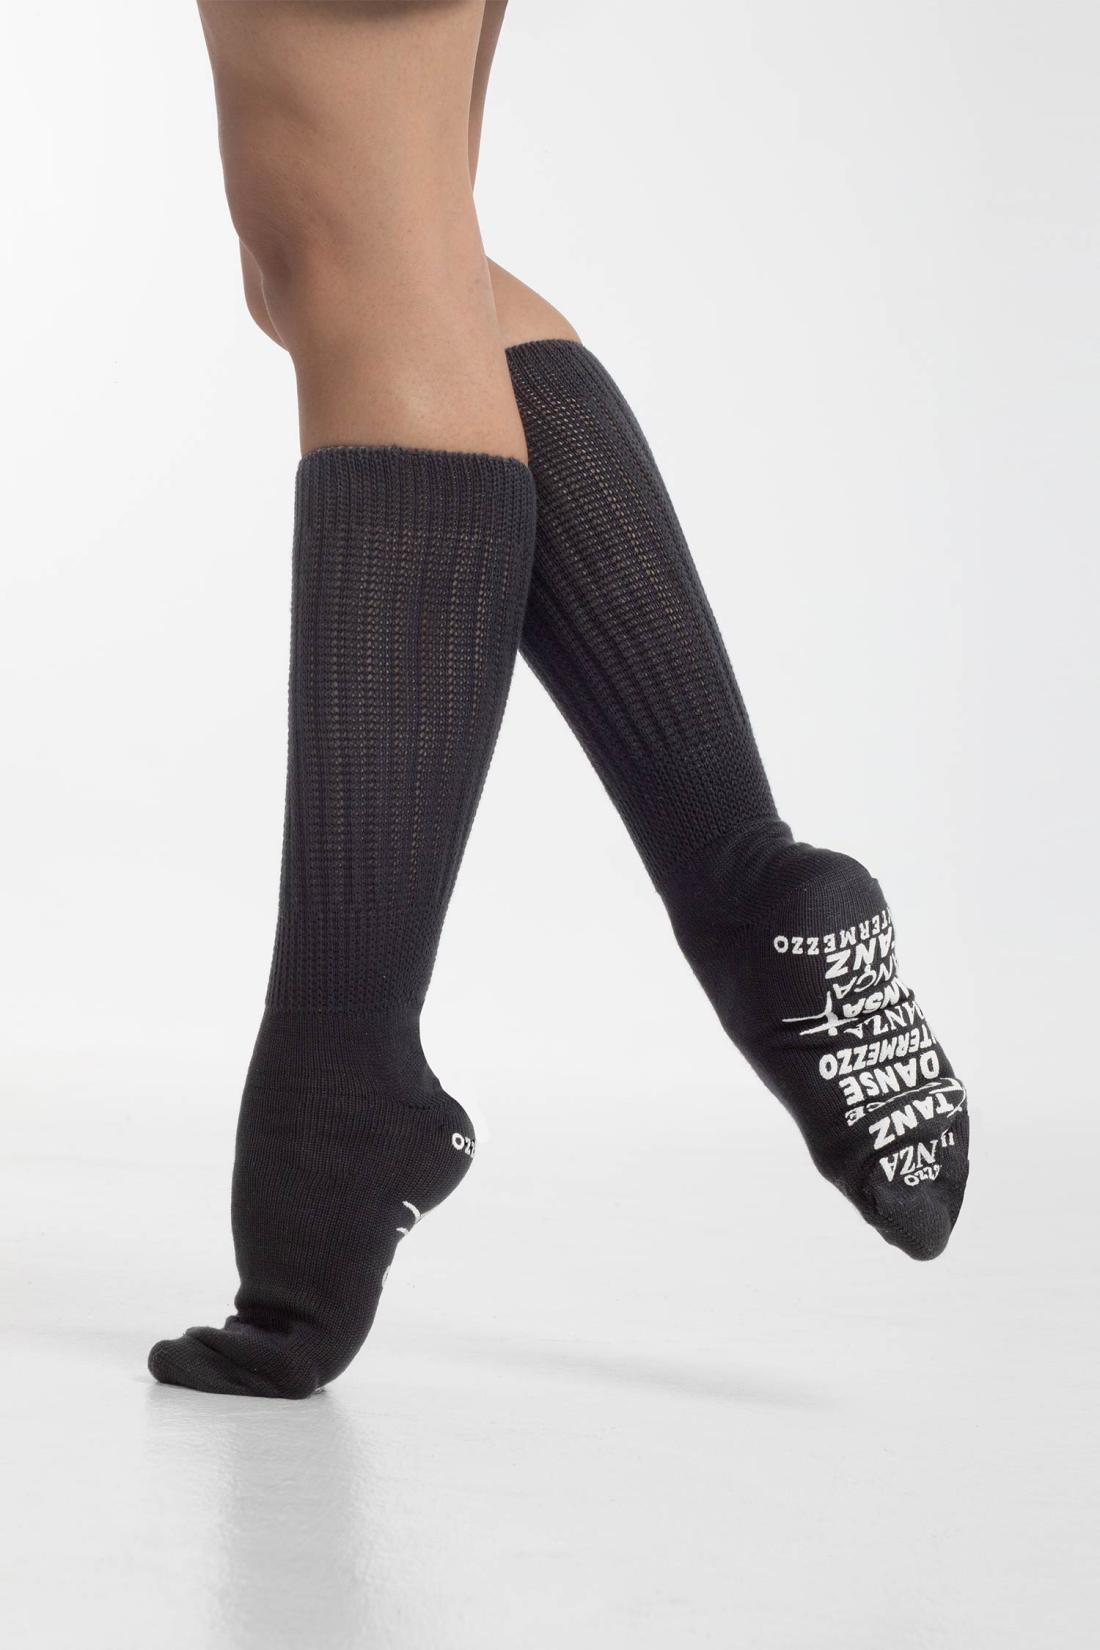 Non-slip Intermezzo Dance Socks for Dancers